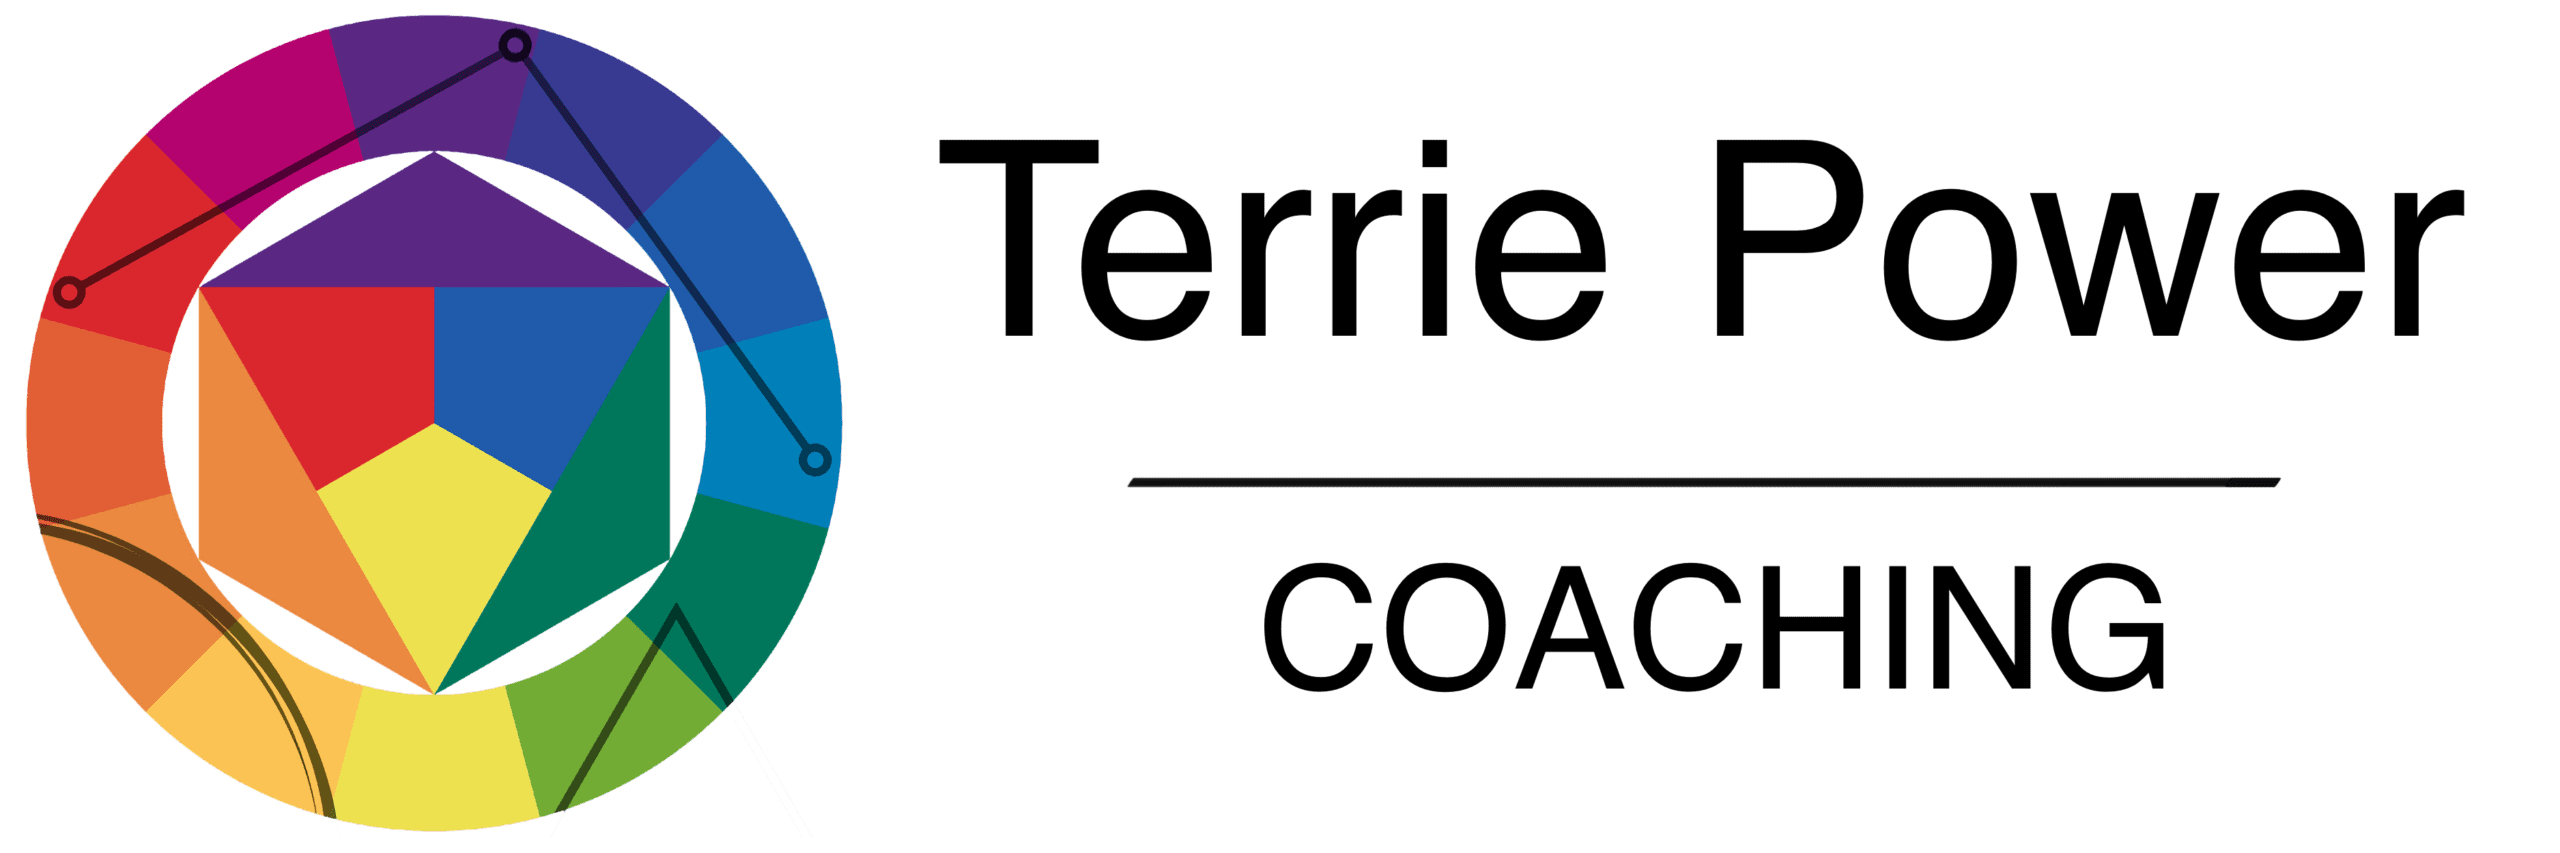 Terrie Power Coaching